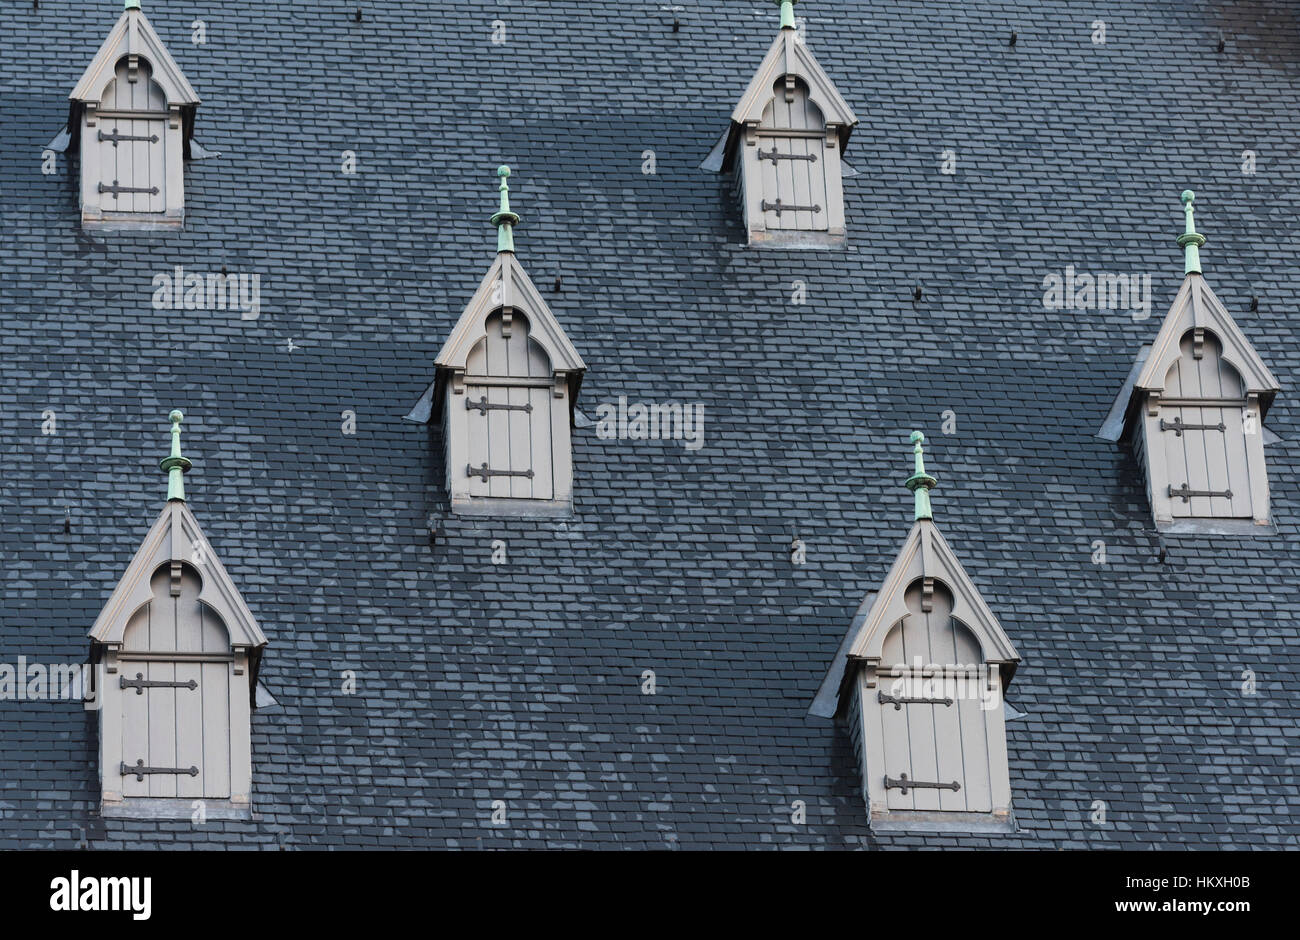 Dachfenster Rathaus Leuven Belgien Stockfoto